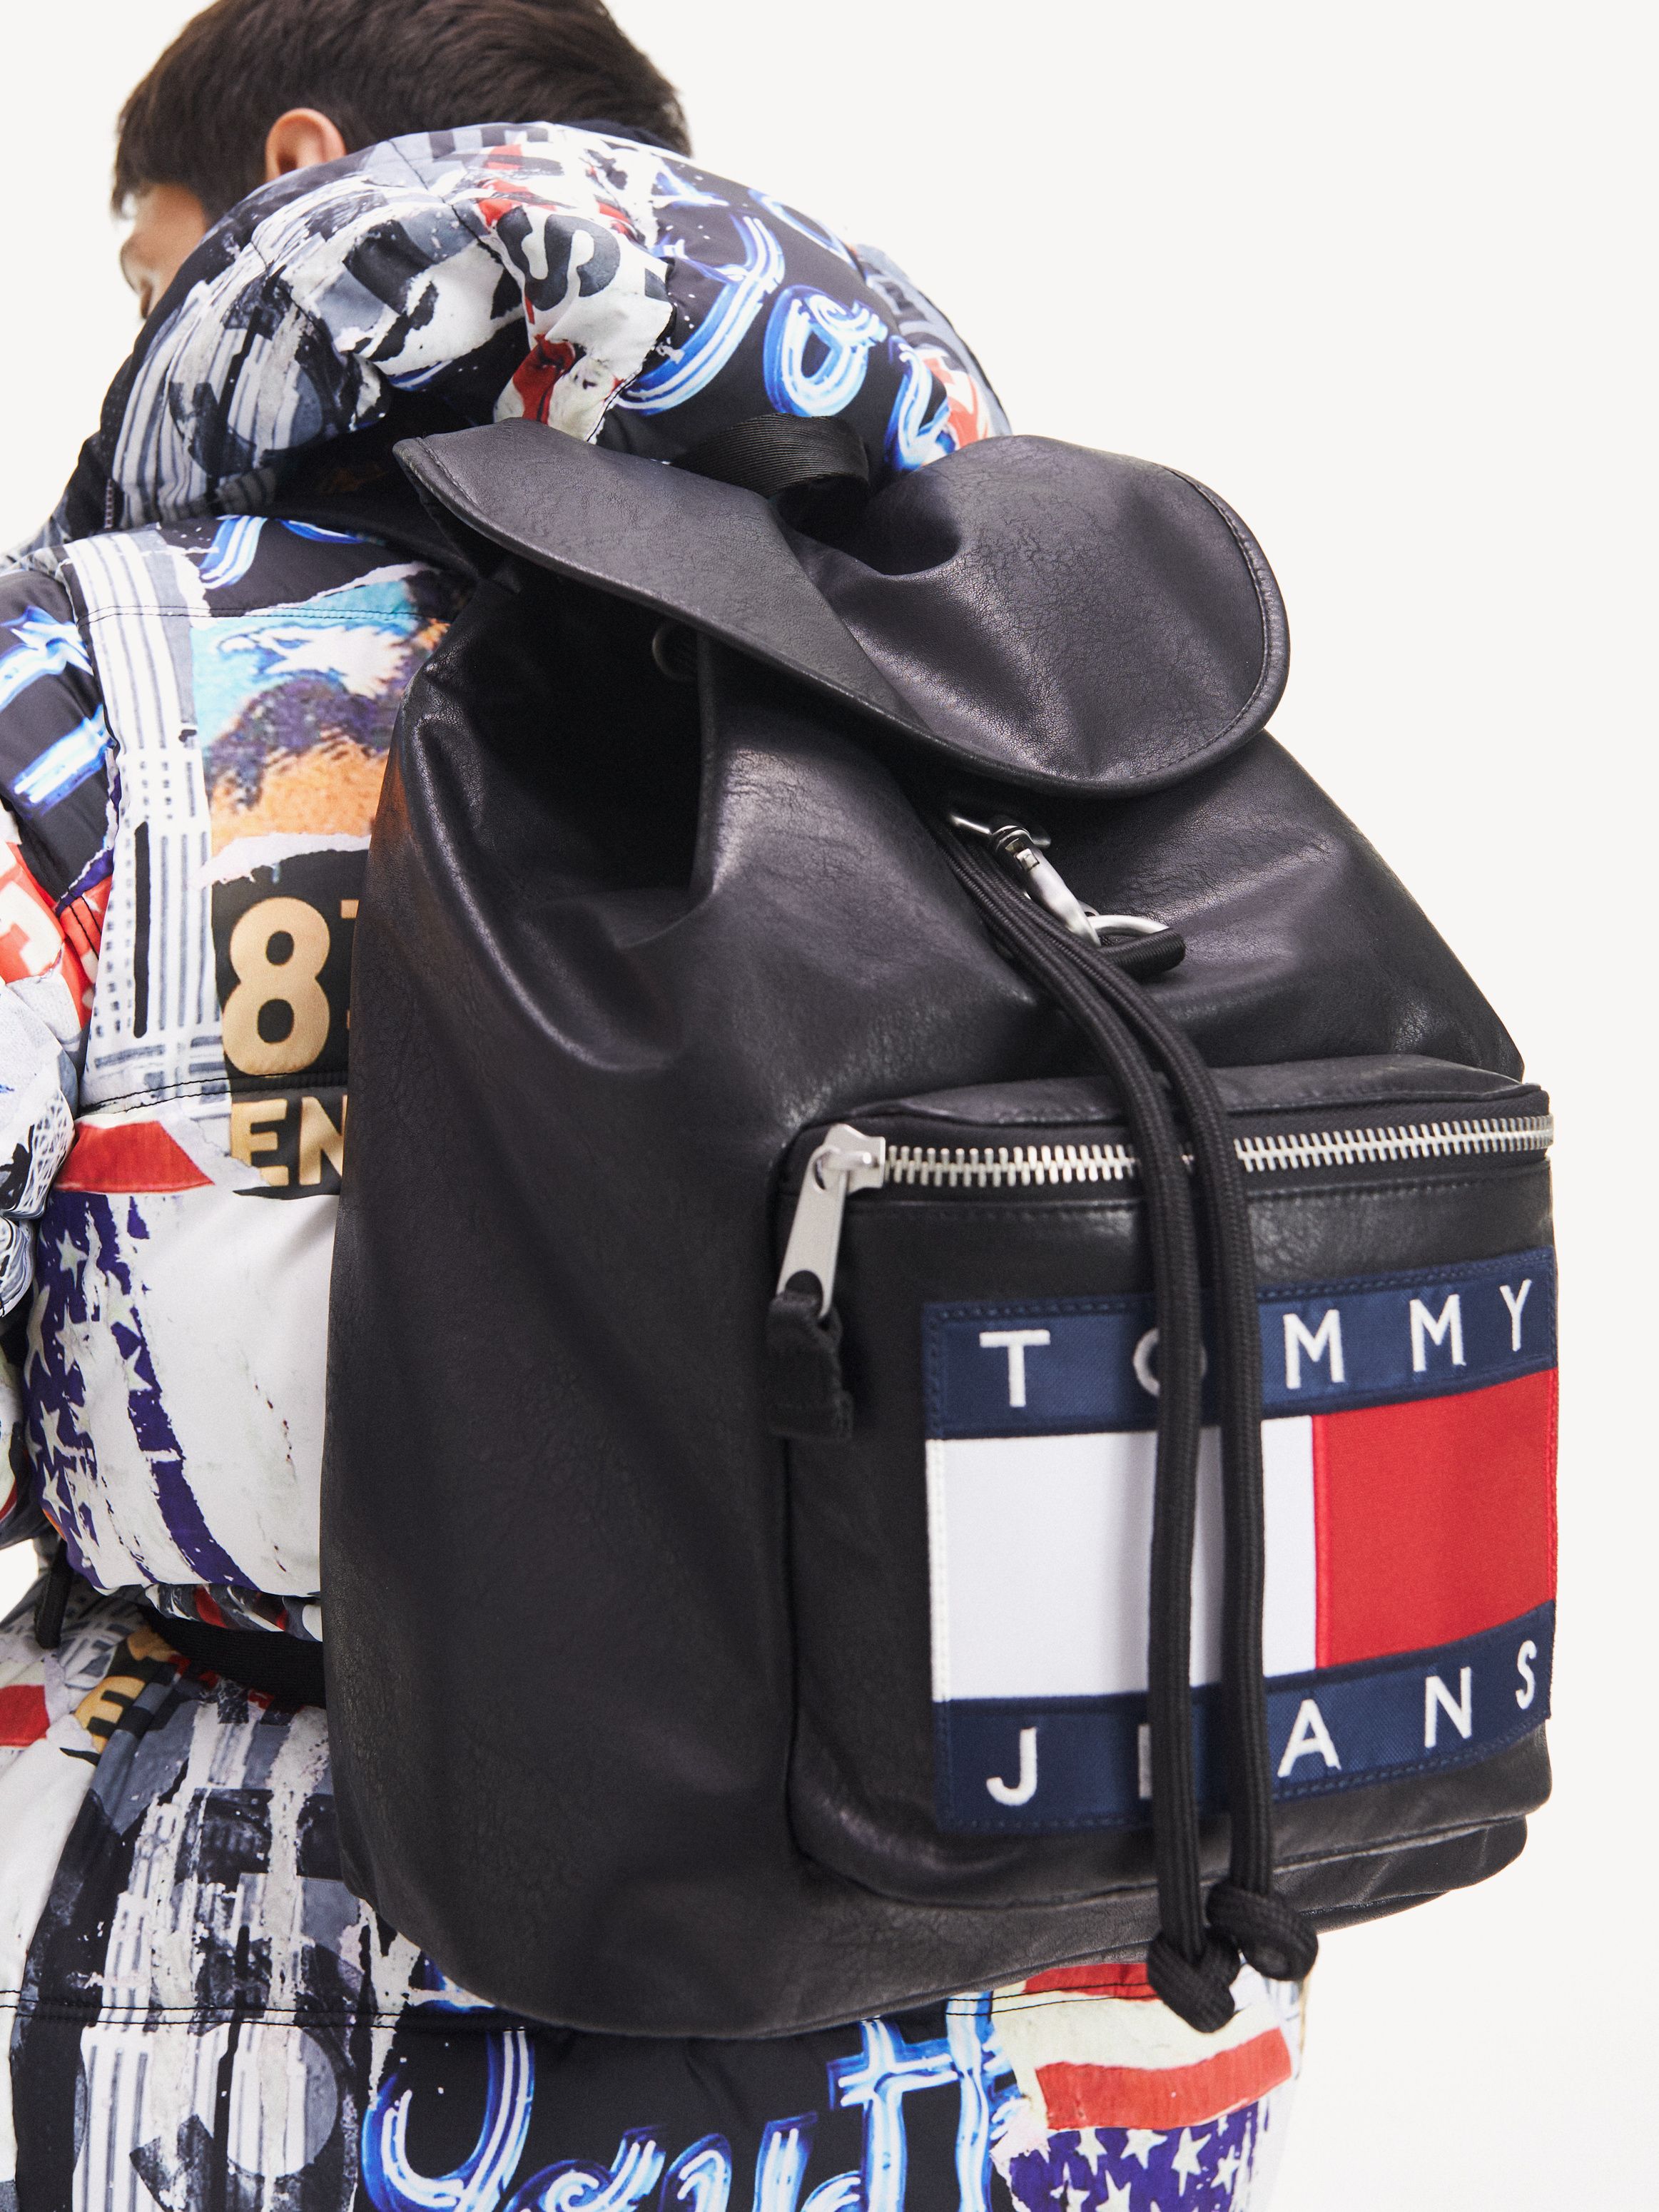 heritage backpack tommy hilfiger